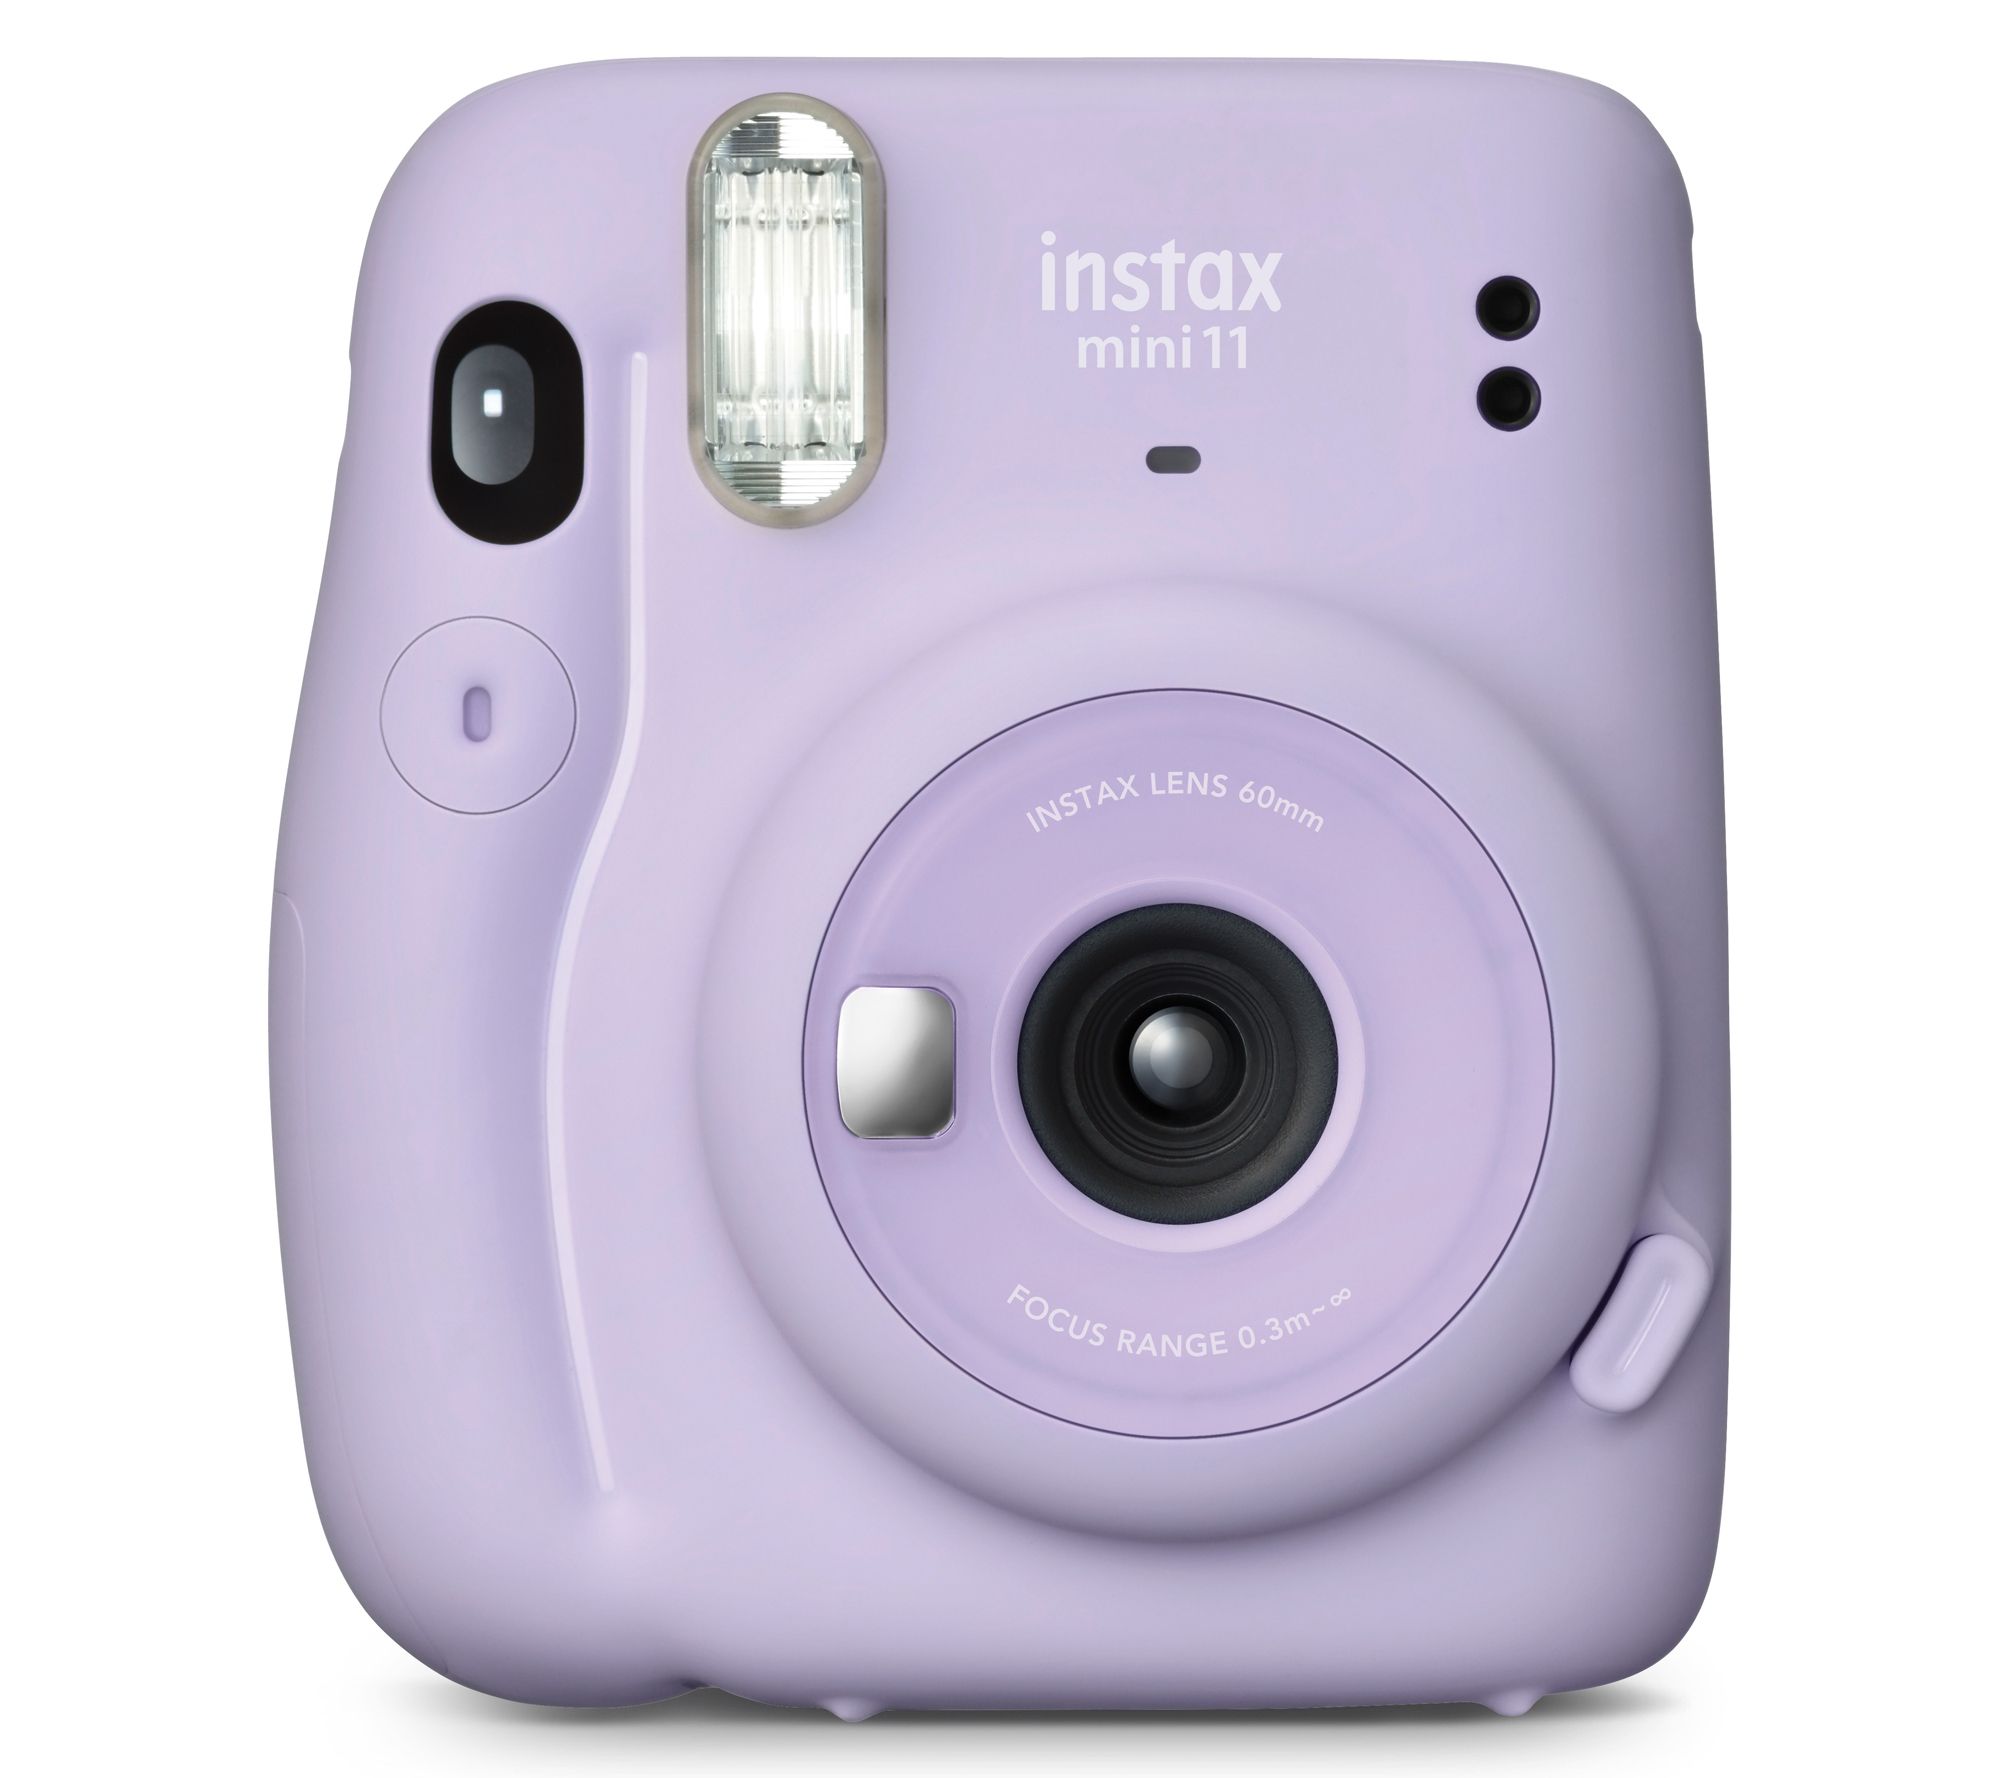 FujiFilm Instax Mini 9 Instant Camera + 40 Fuji Film + Full Accessory Kit